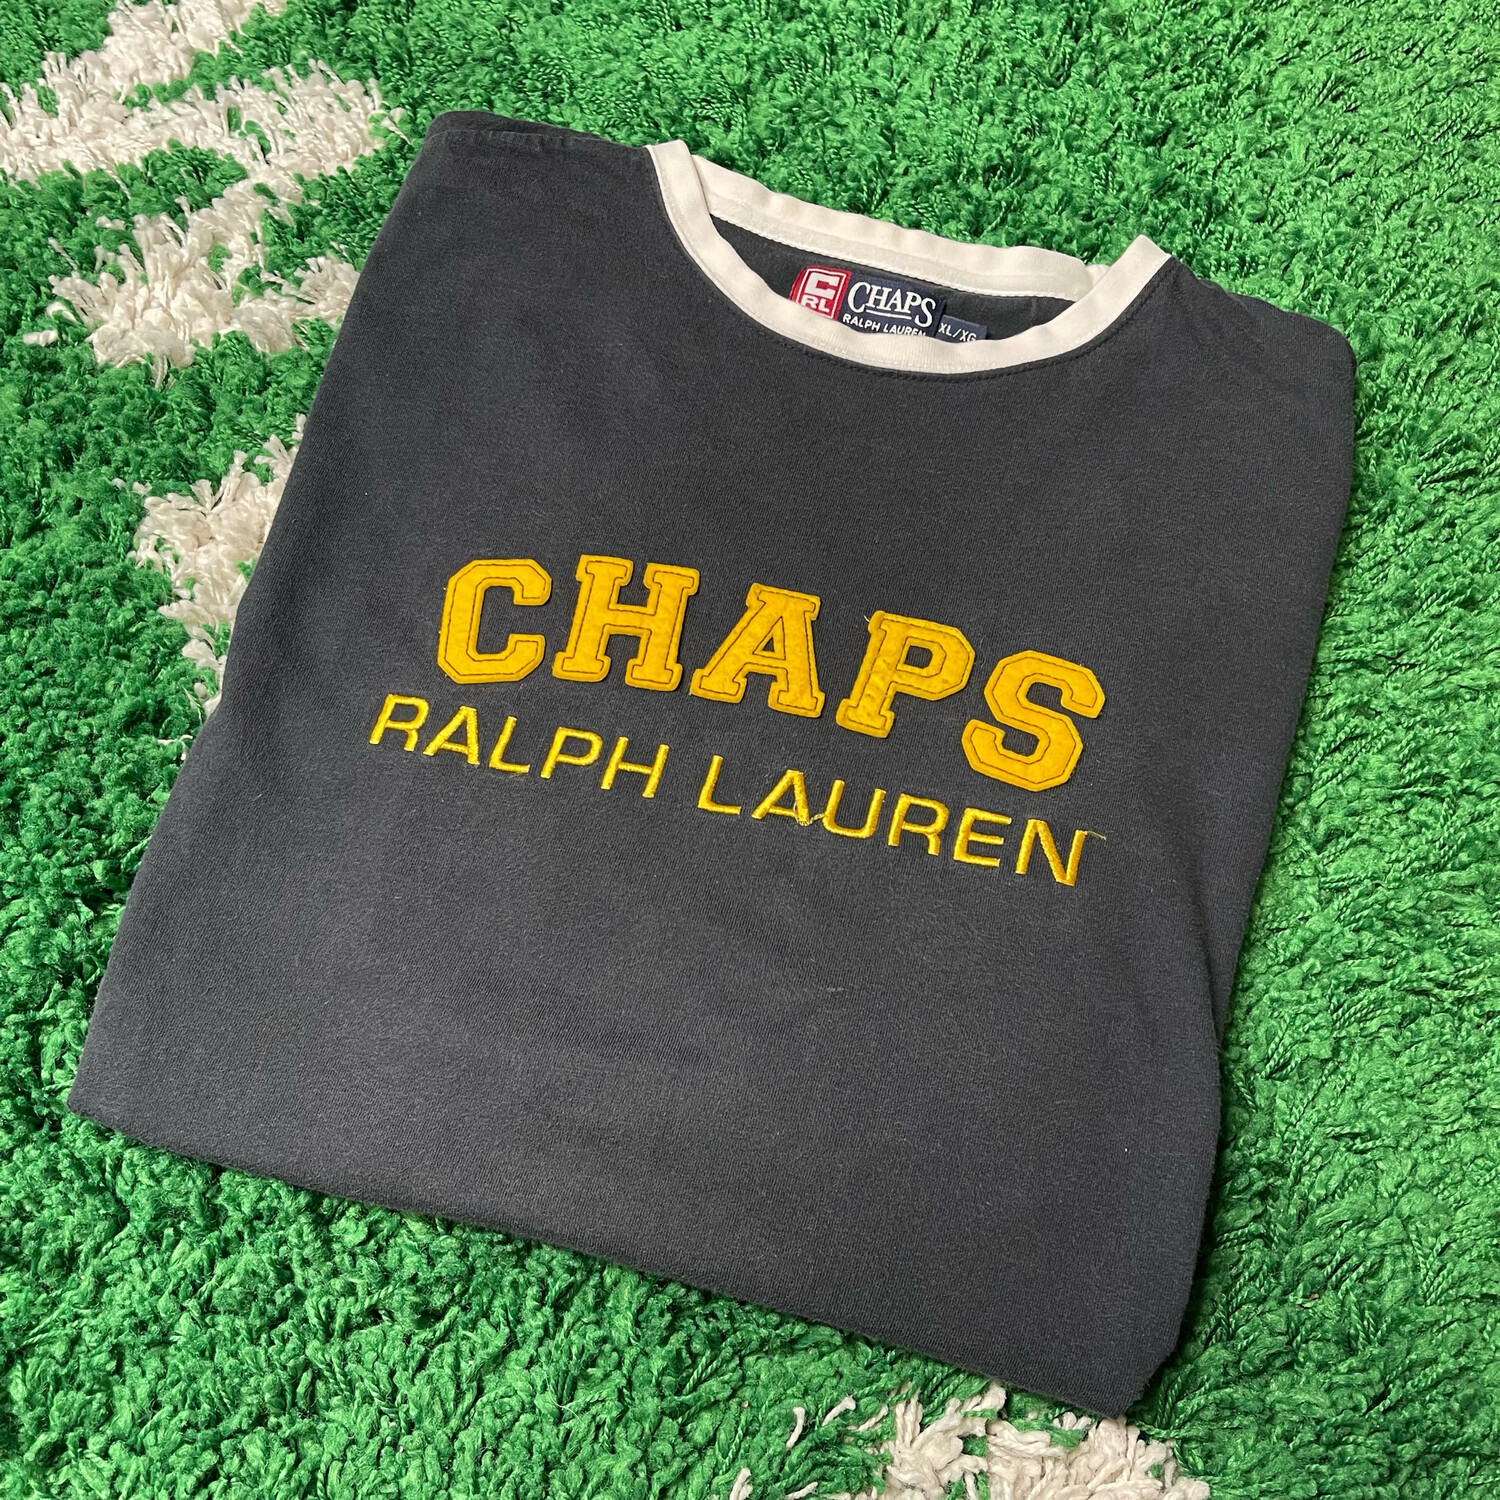 Chaps Ralph Lauren Long Sleeve Shirt Size XL